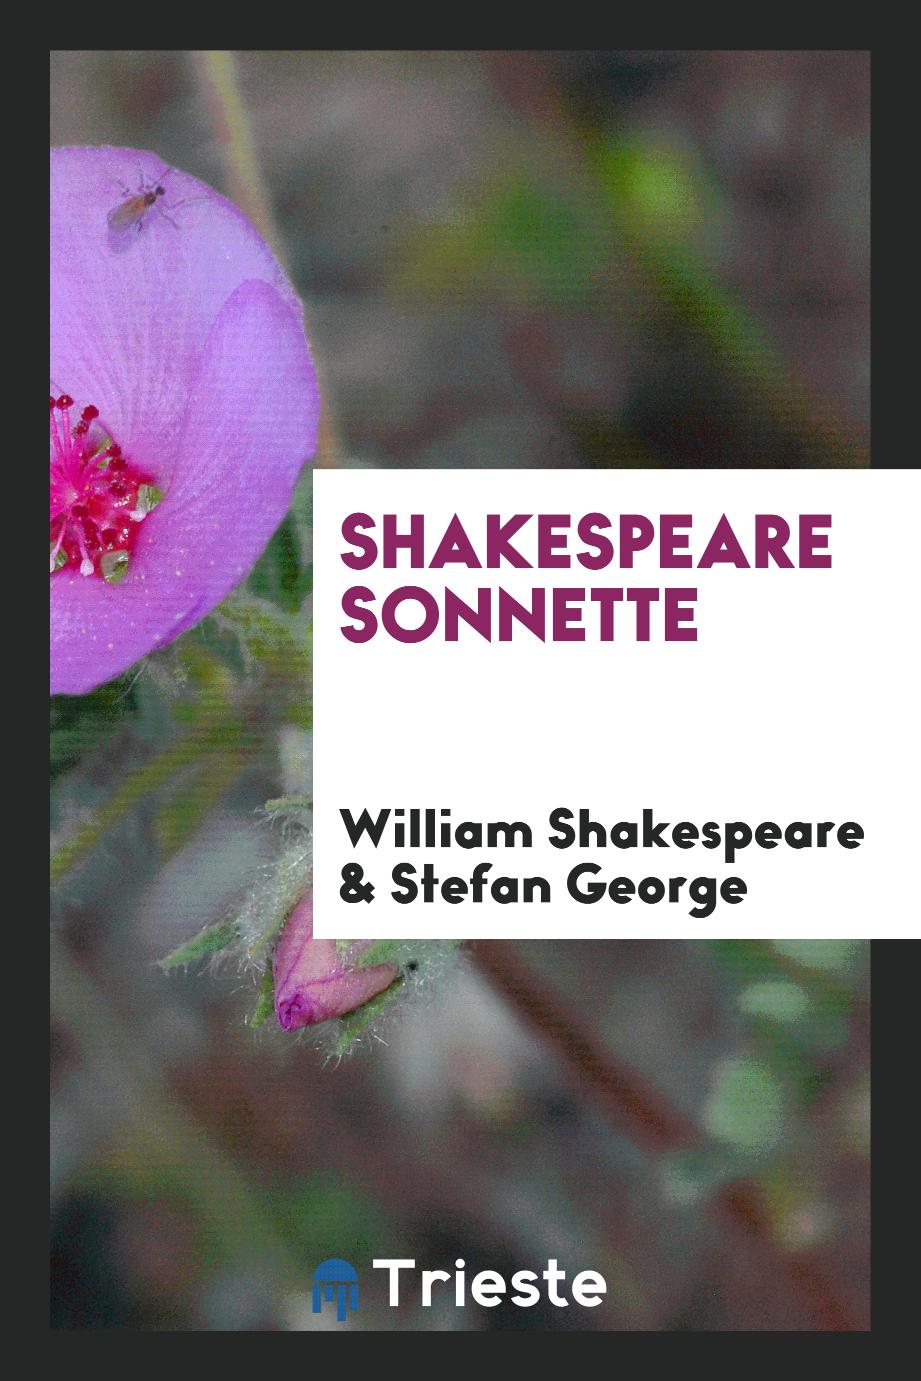 Shakespeare sonnette